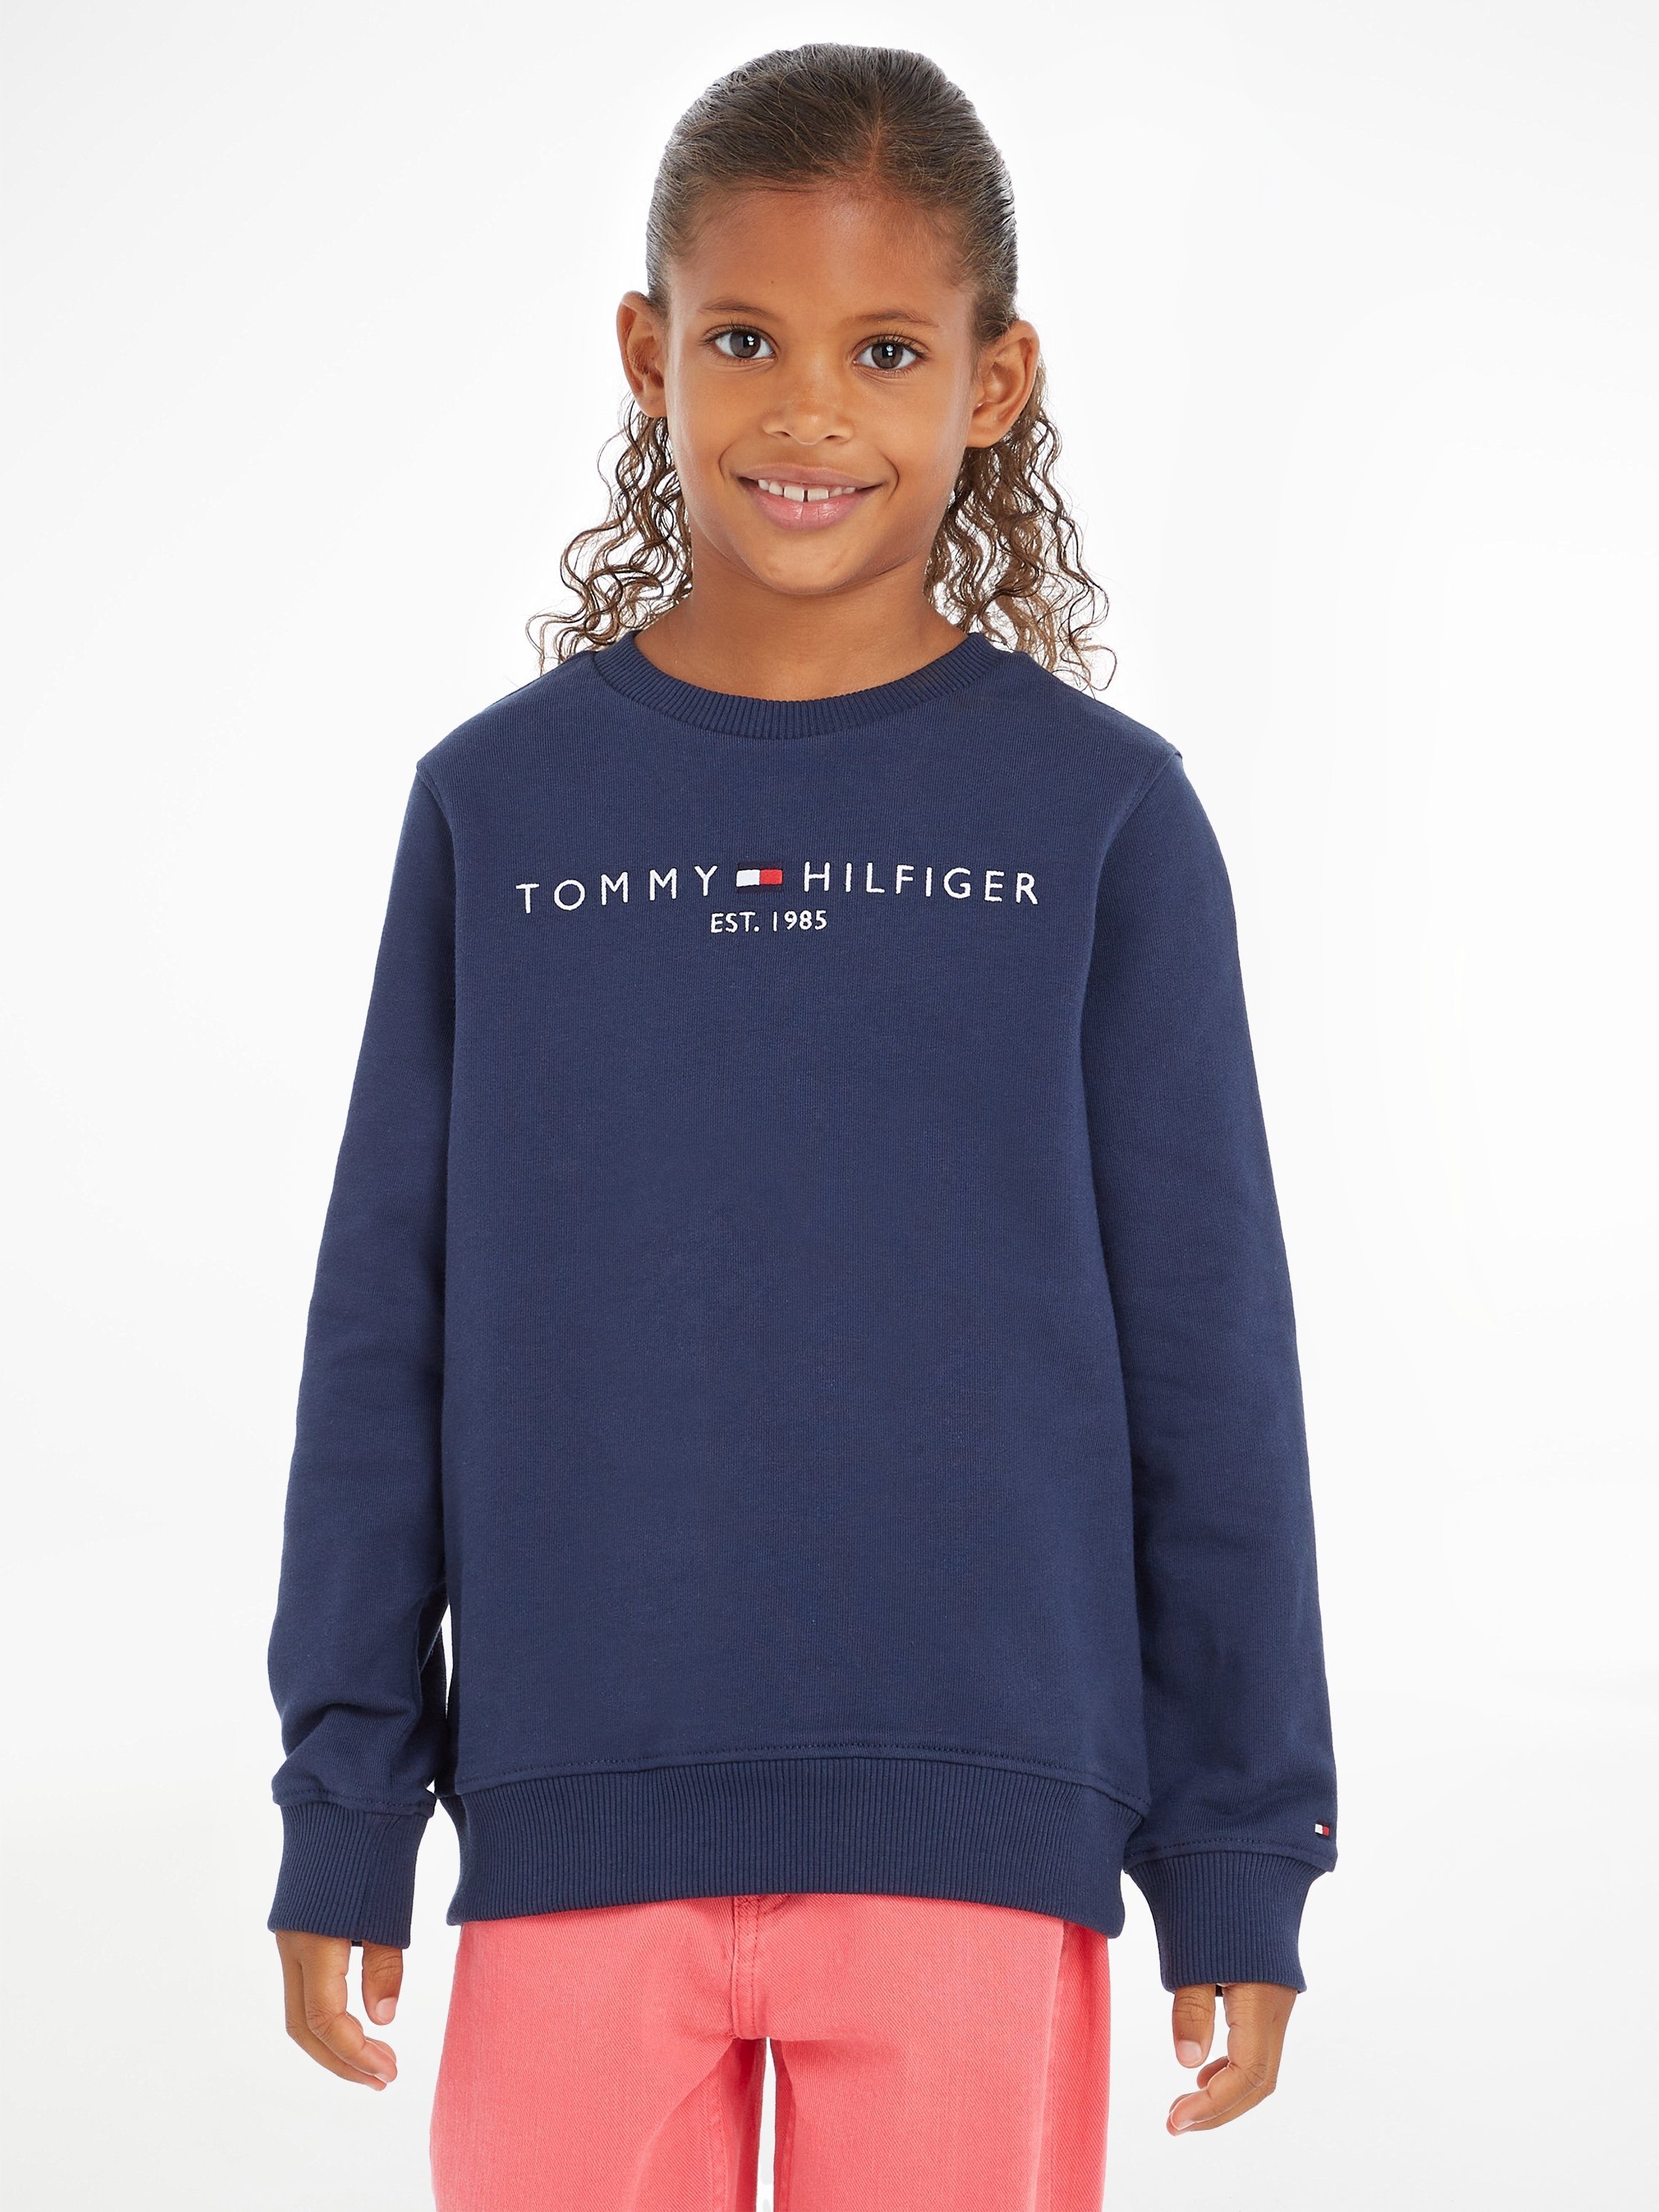 SWEATSHIRT mit Sweatshirt ESSENTIAL Hilfger Tommy Tommy Hilfiger Logo -Schriftzug